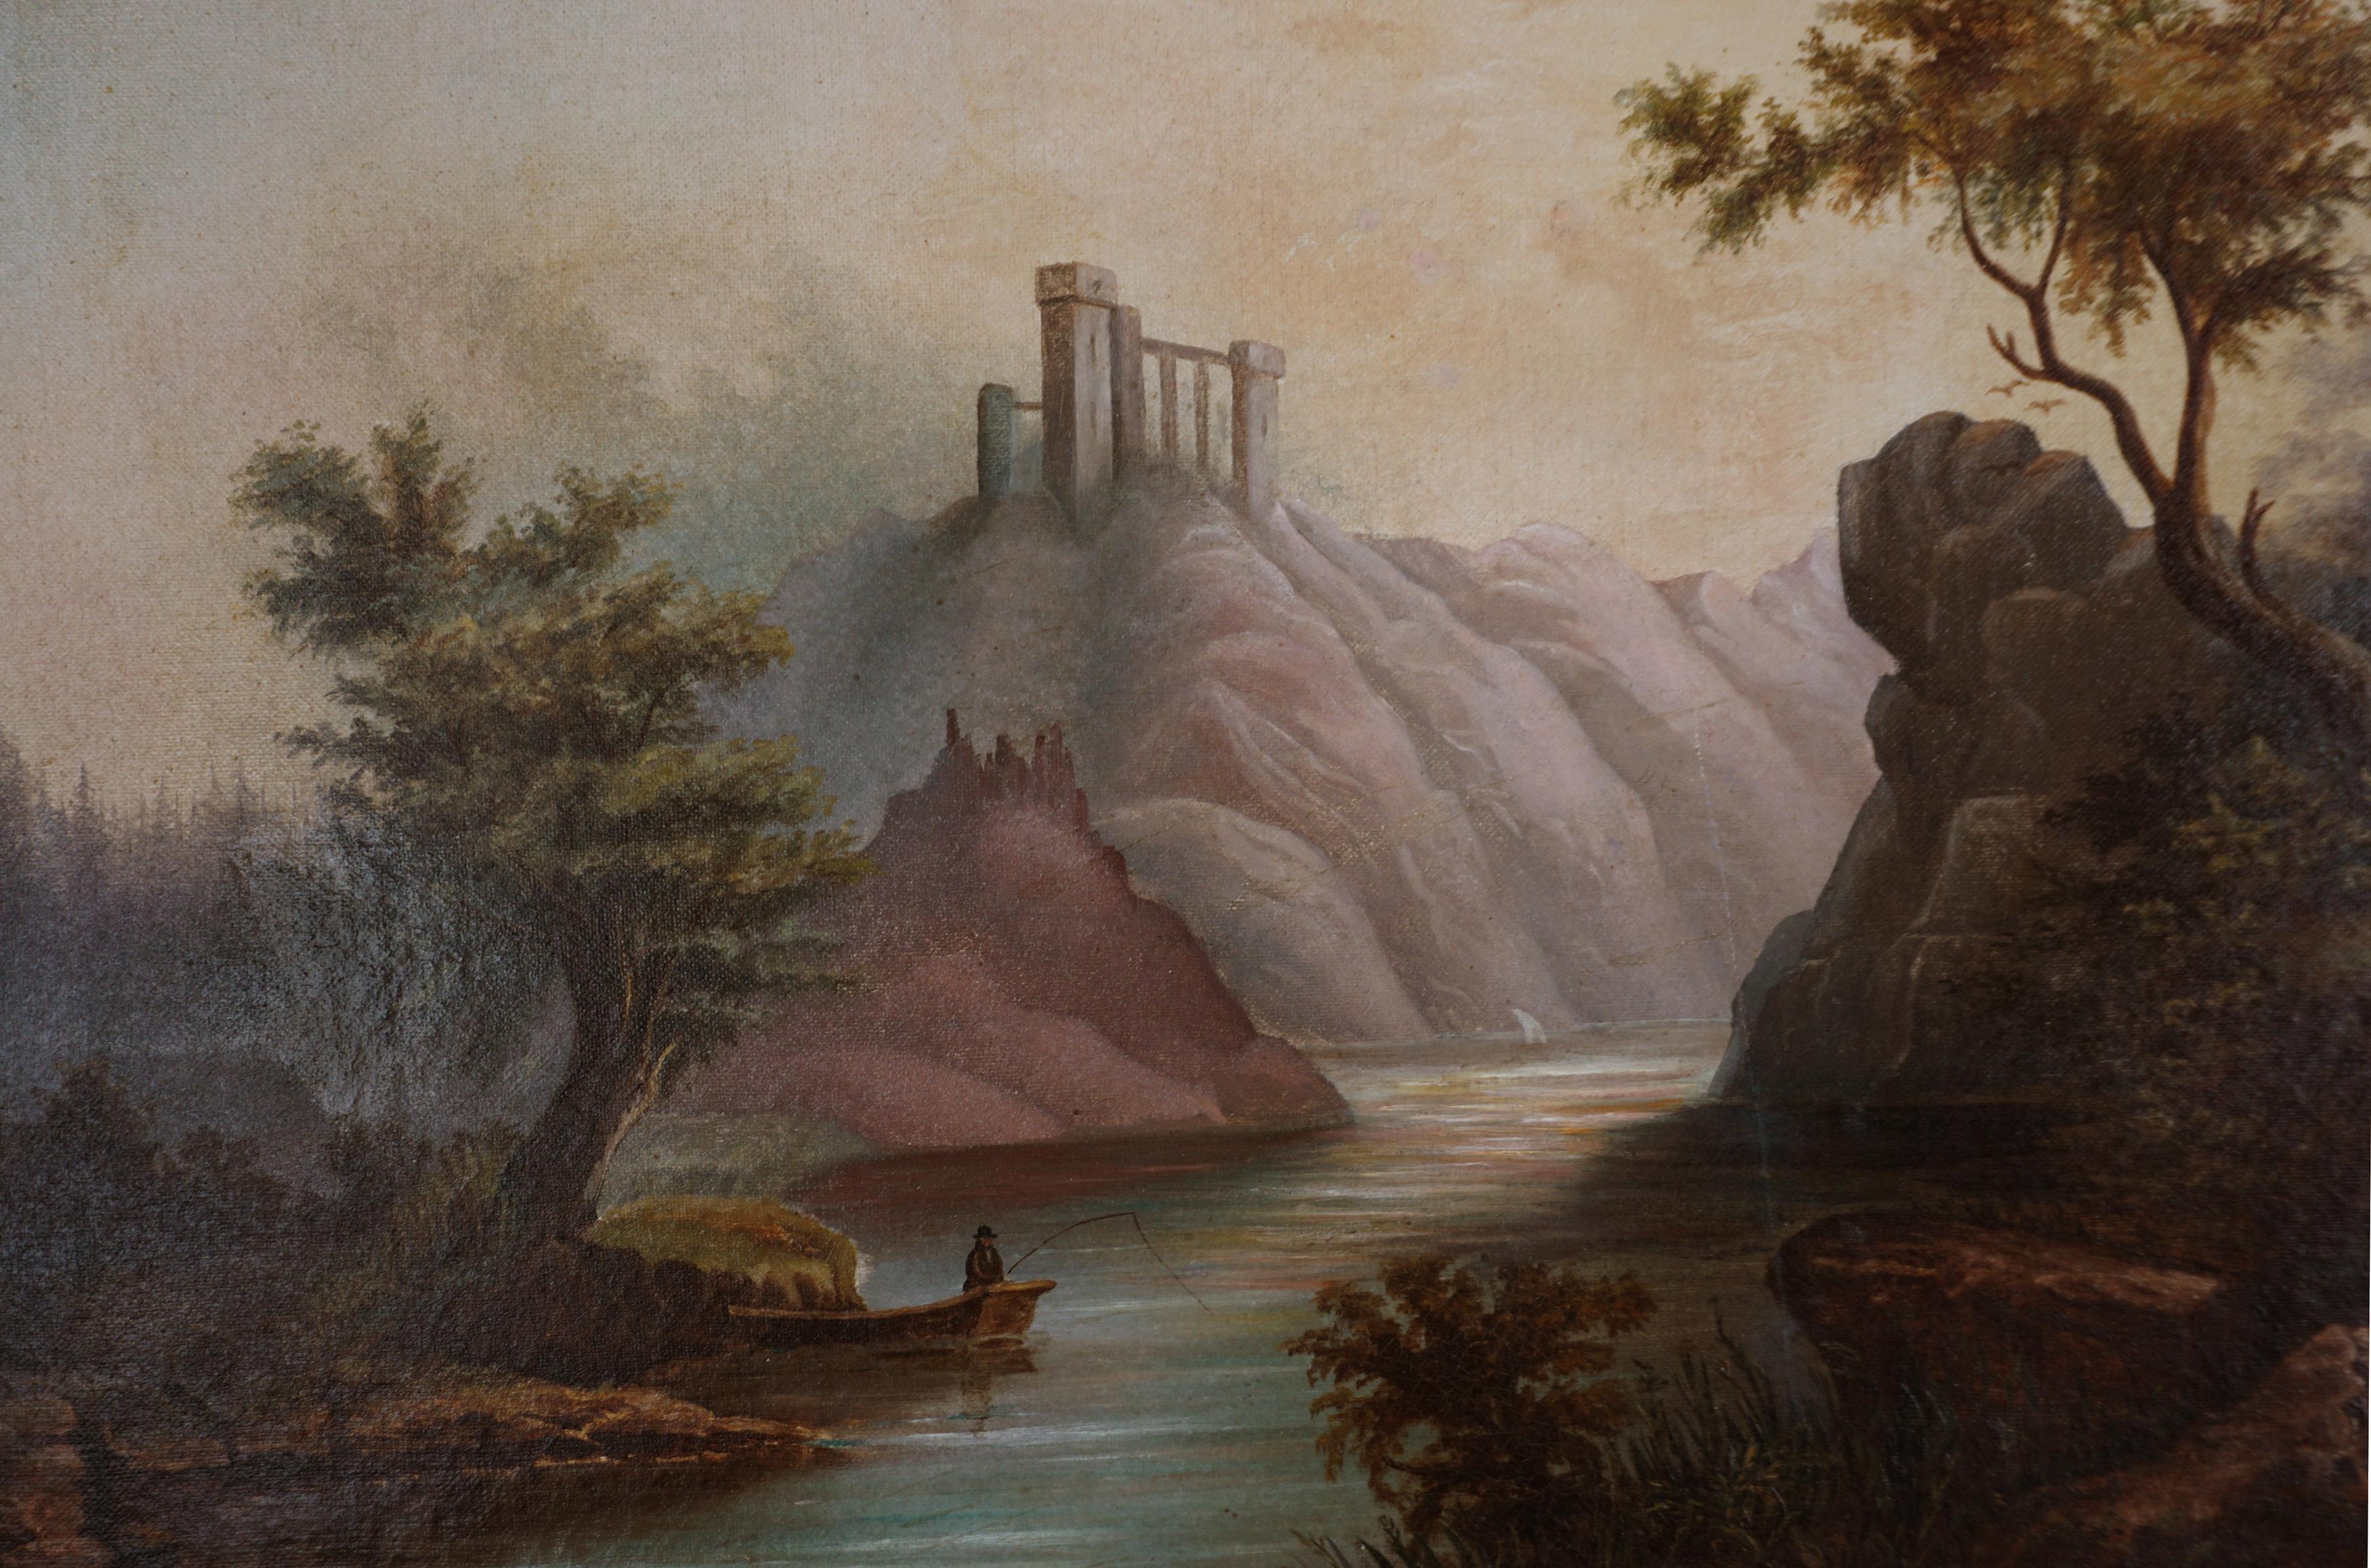 Peinture à l'huile originale du milieu du 19e siècle représentant la pêche sur un loch écossais dans le style d'Alexander Nasmyth 

Magnifique peinture de paysage du 19e siècle représentant un loch écossais avec des pêcheurs et des ruines de château